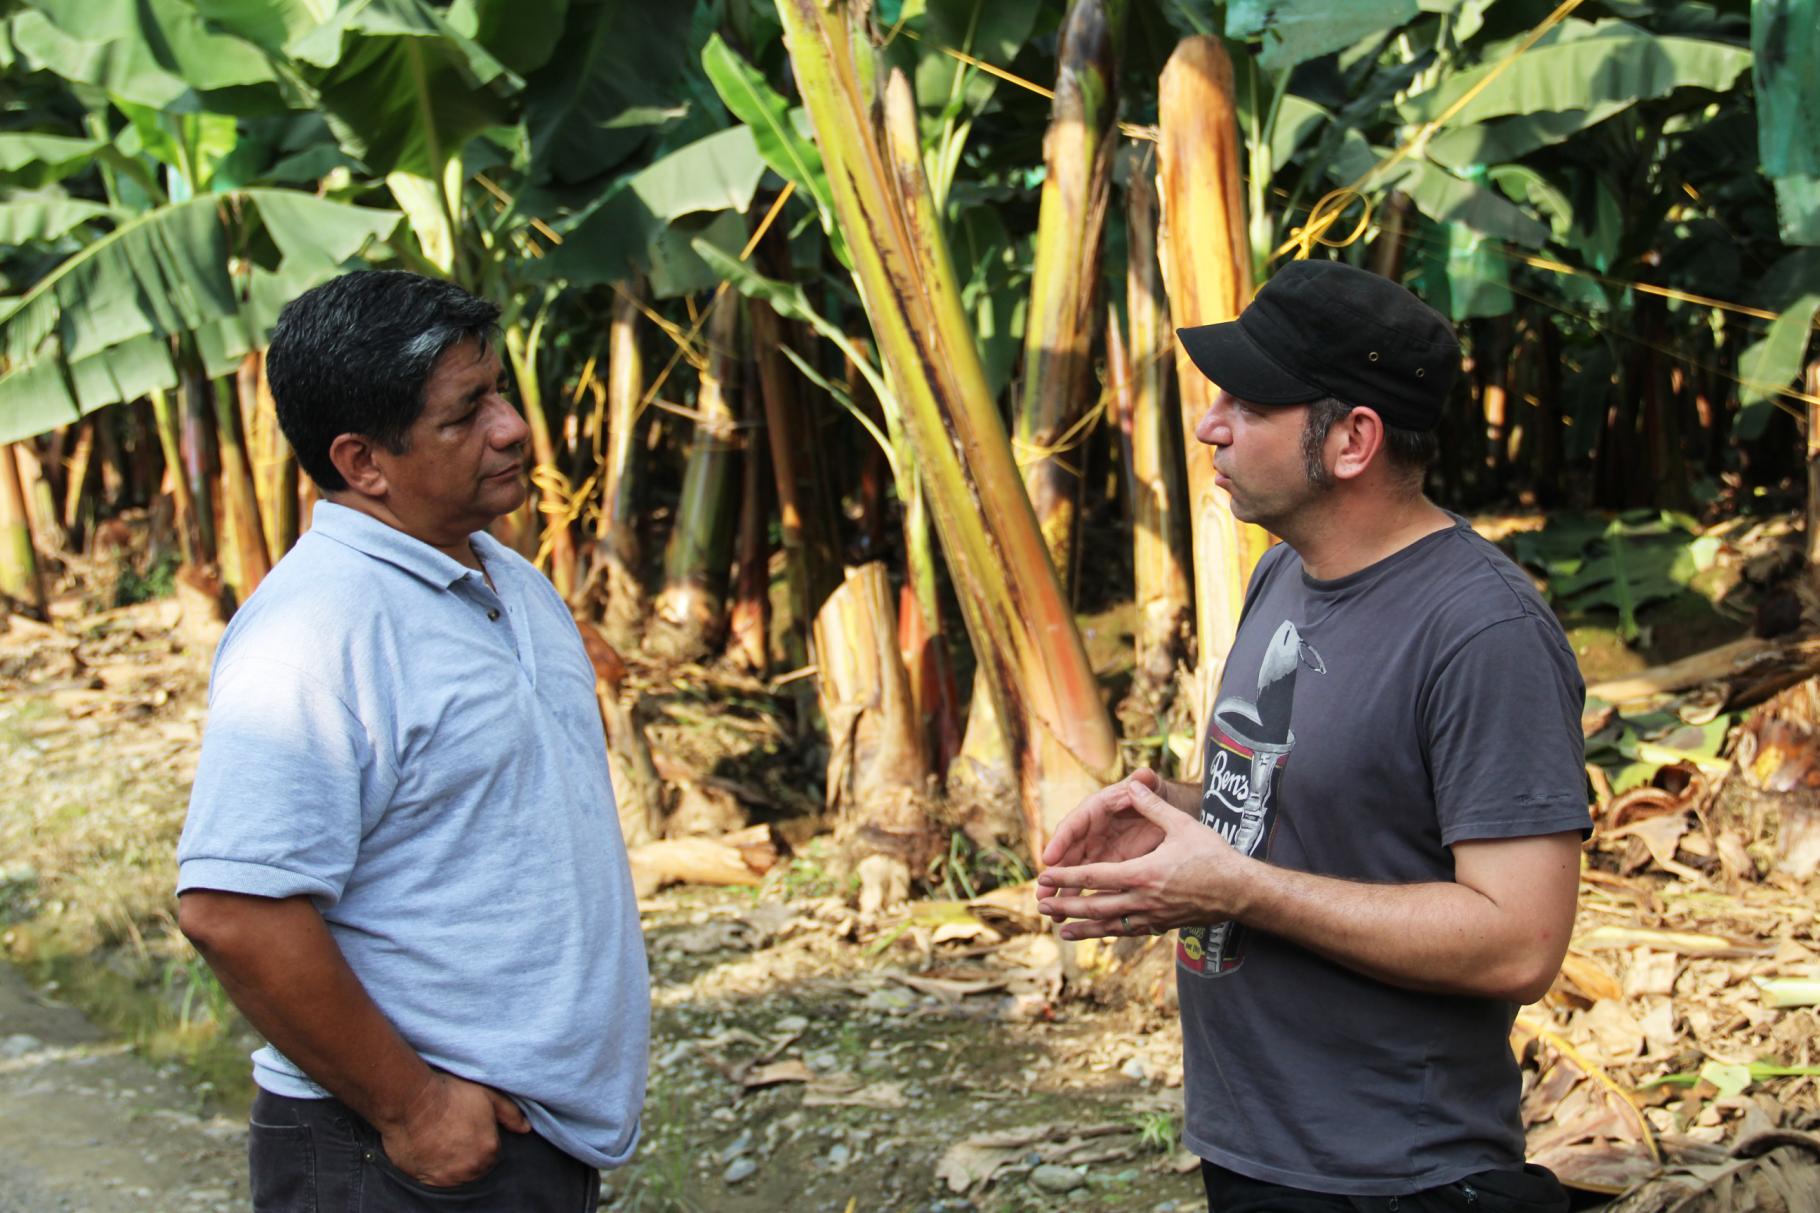 Ole Plogstedt unterhält sich mit Jorge Acosta vor Bananenstauden